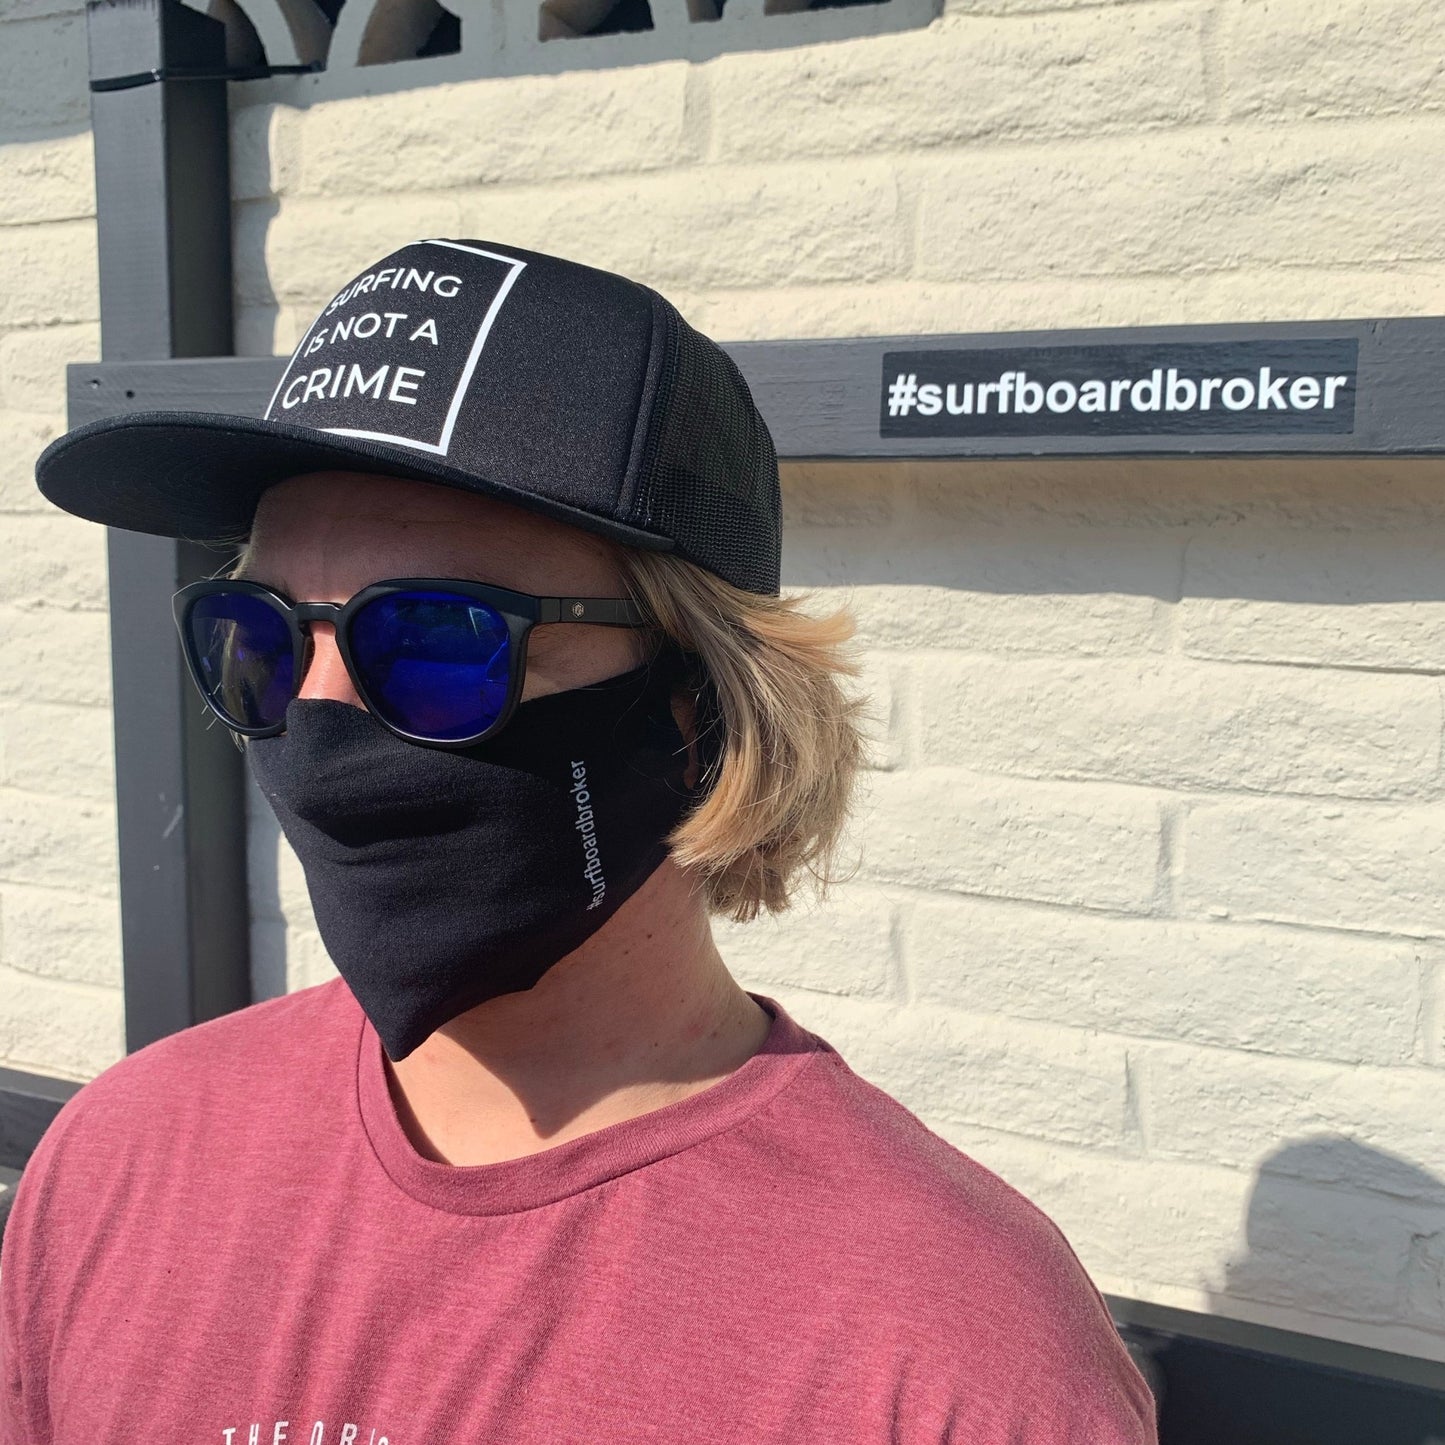 Surfboardbroker Mask - Surfboardbroker